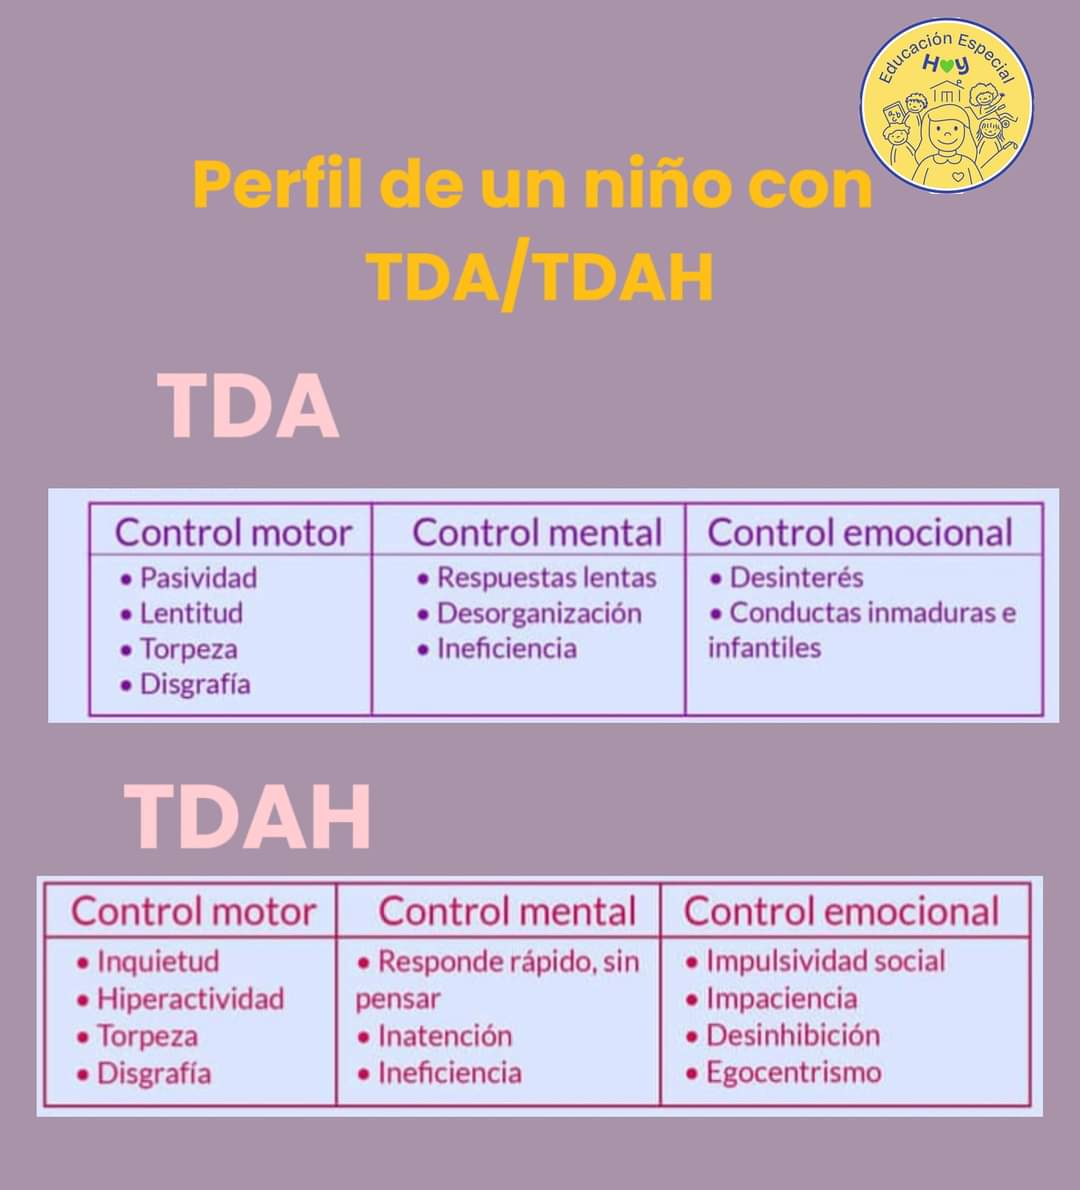 Perfil del #TDAH #TDA 💡

Algunas características ⬇️